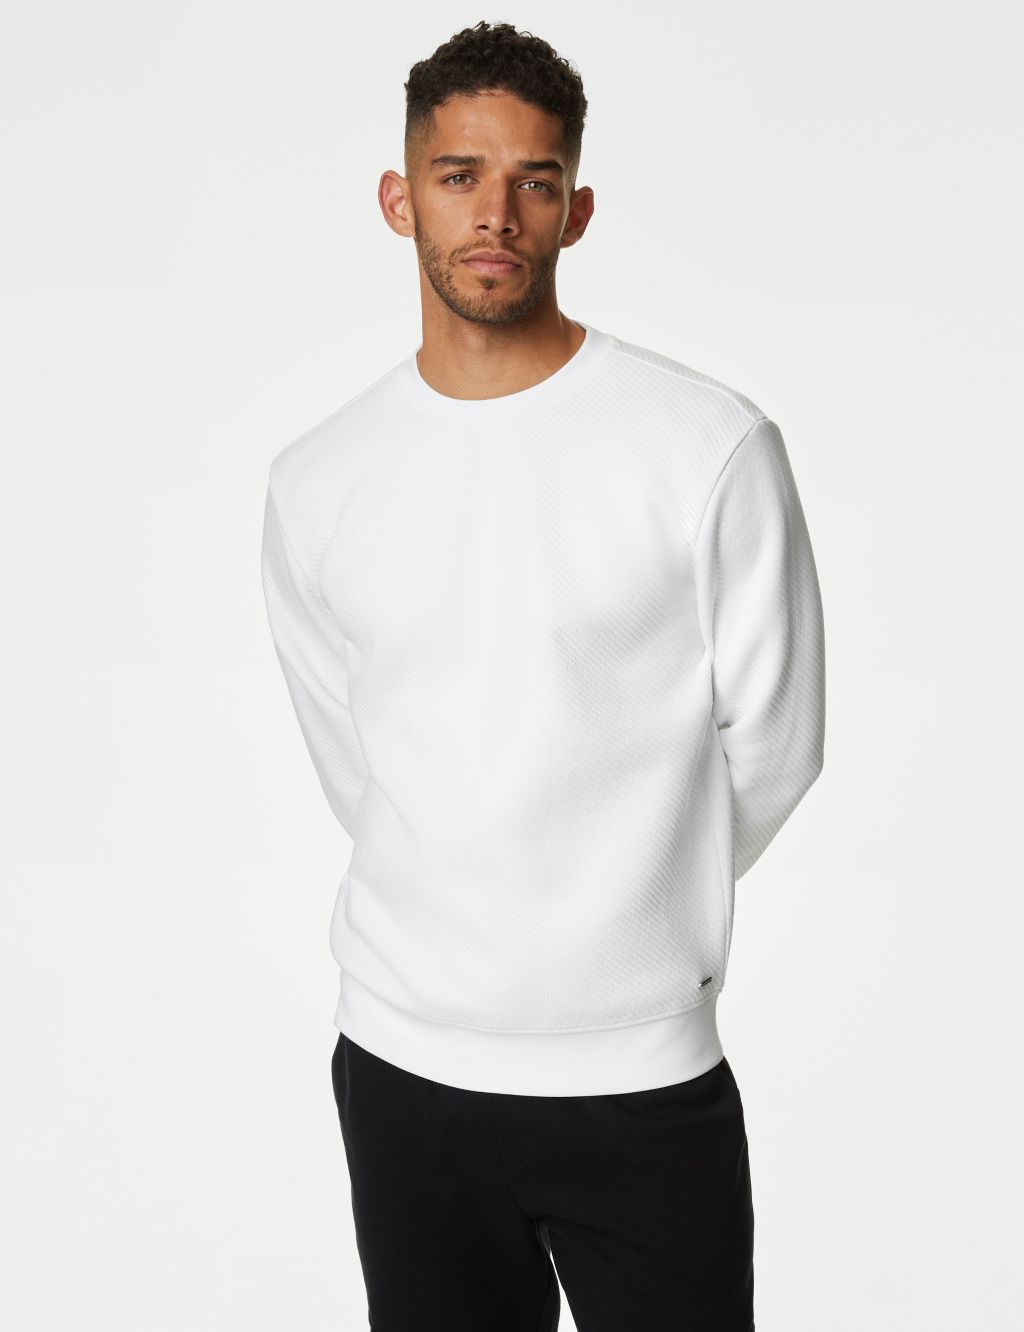 Cotton Rich Textured Crewneck Sweatshirt